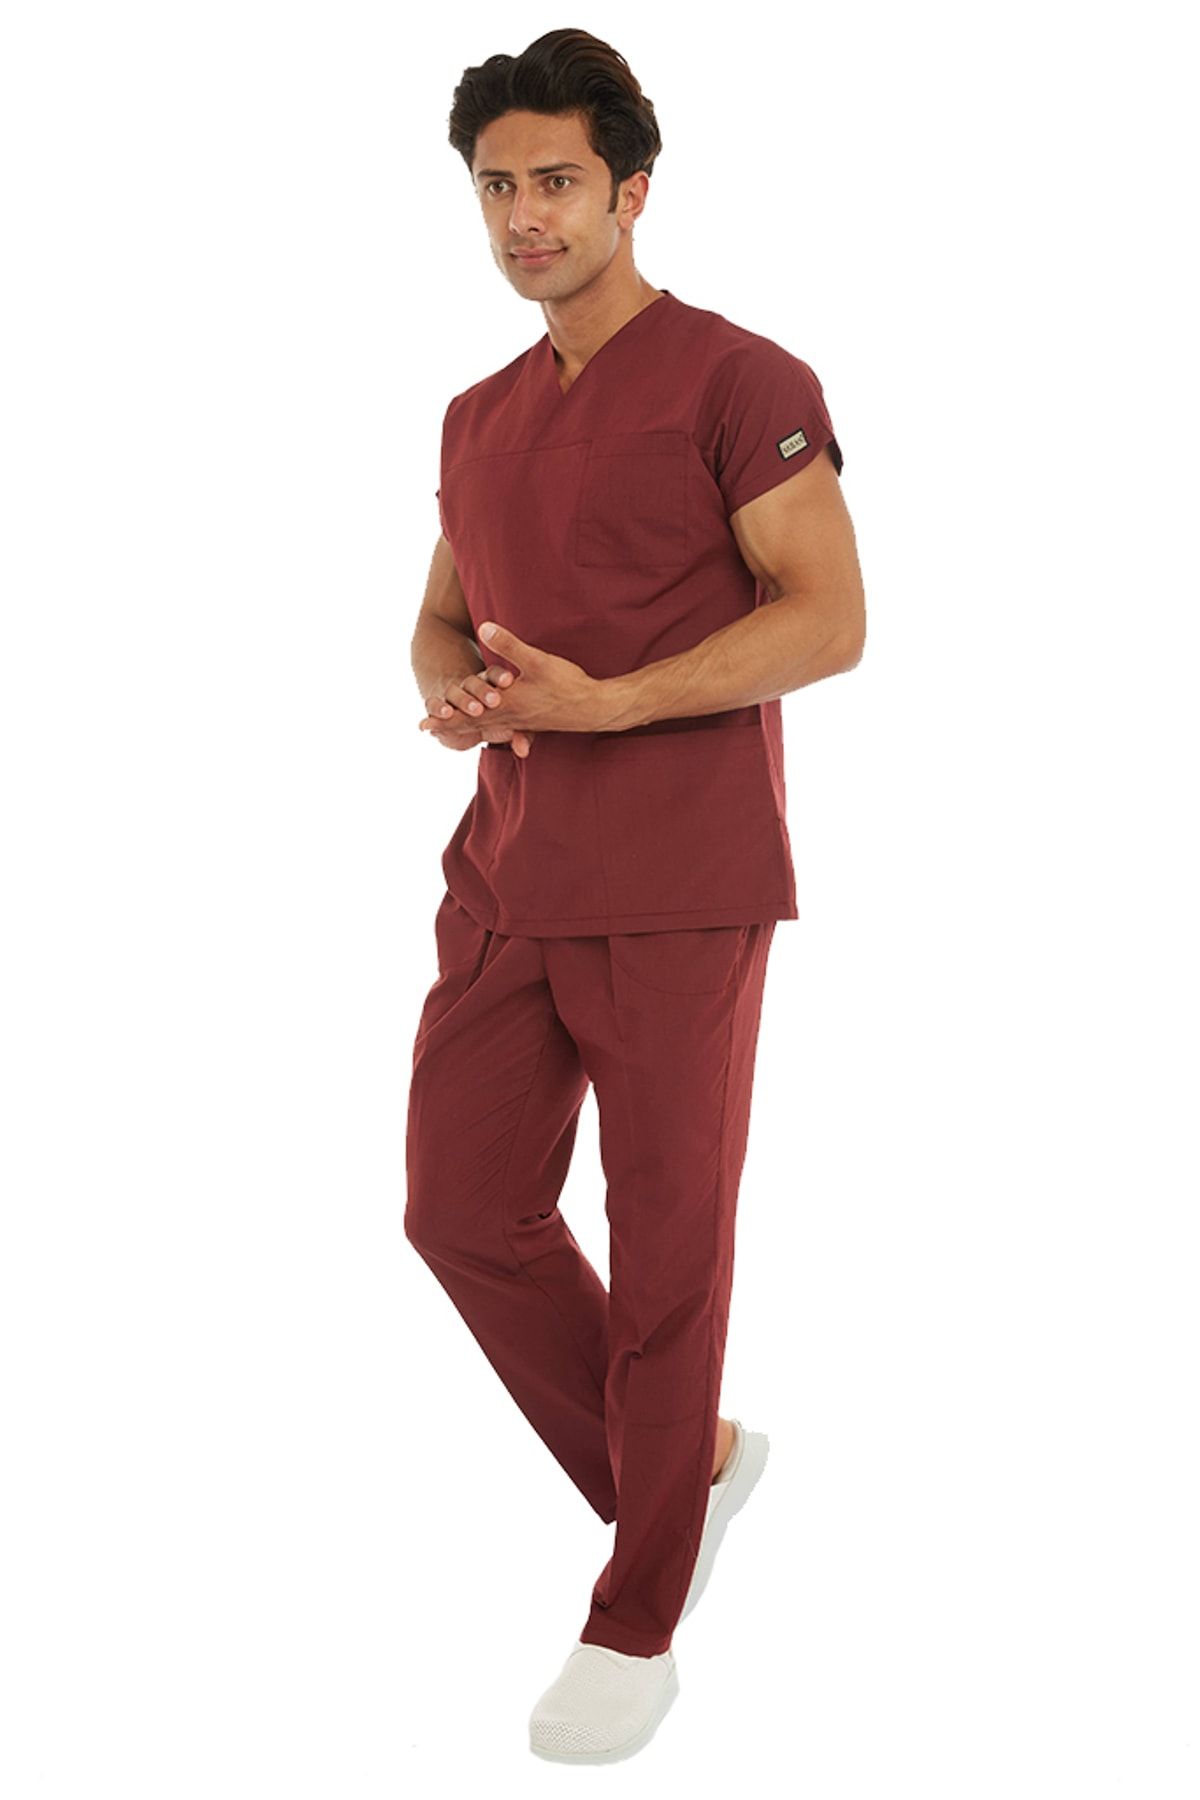 VEHBİ Terikoton (İnce) Kumaş Erkek Doktor Hemşire Hastane Forması Nöbet Takımı (Zarf Yaka-Klasik Kol)